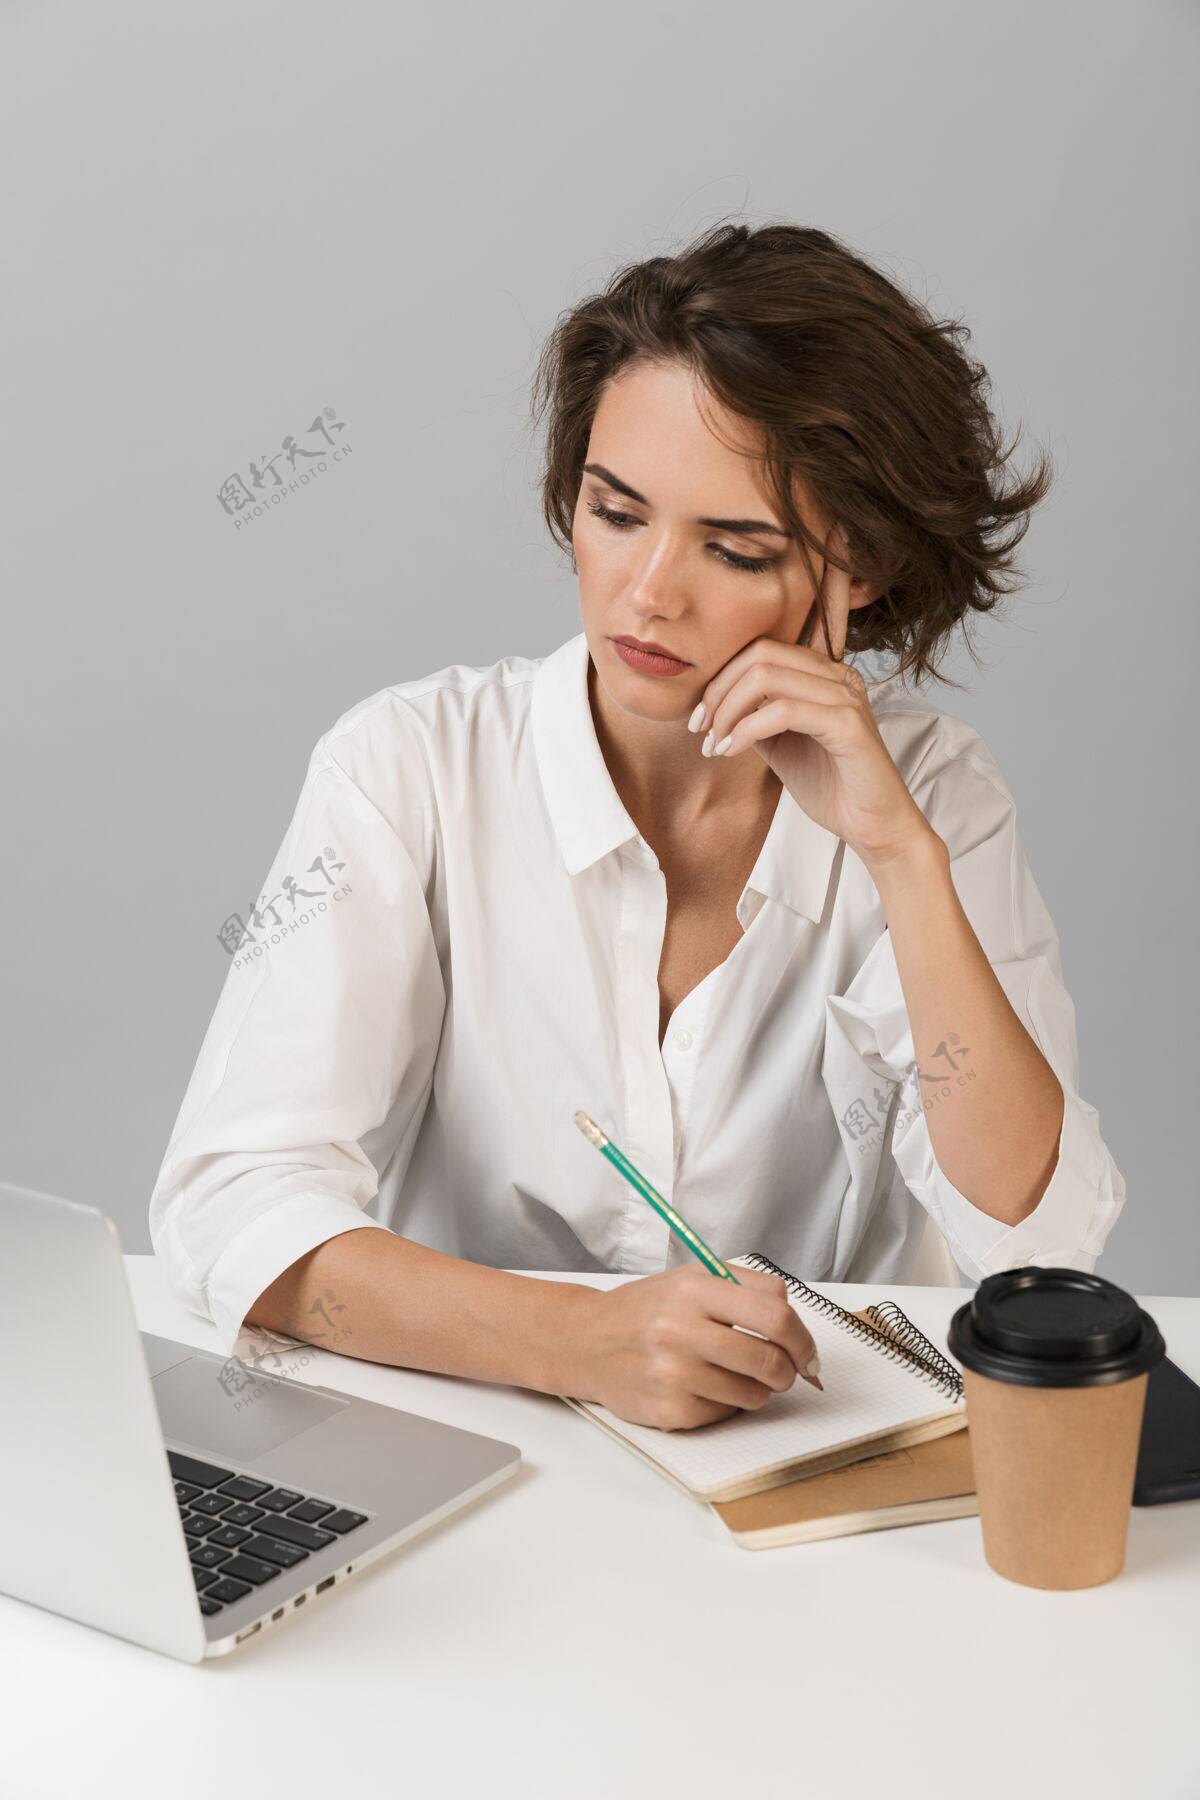 笔记本电脑严肃的女商人坐在桌旁用笔记本电脑隔着灰墙摆出孤立的姿势可爱年轻商务人士